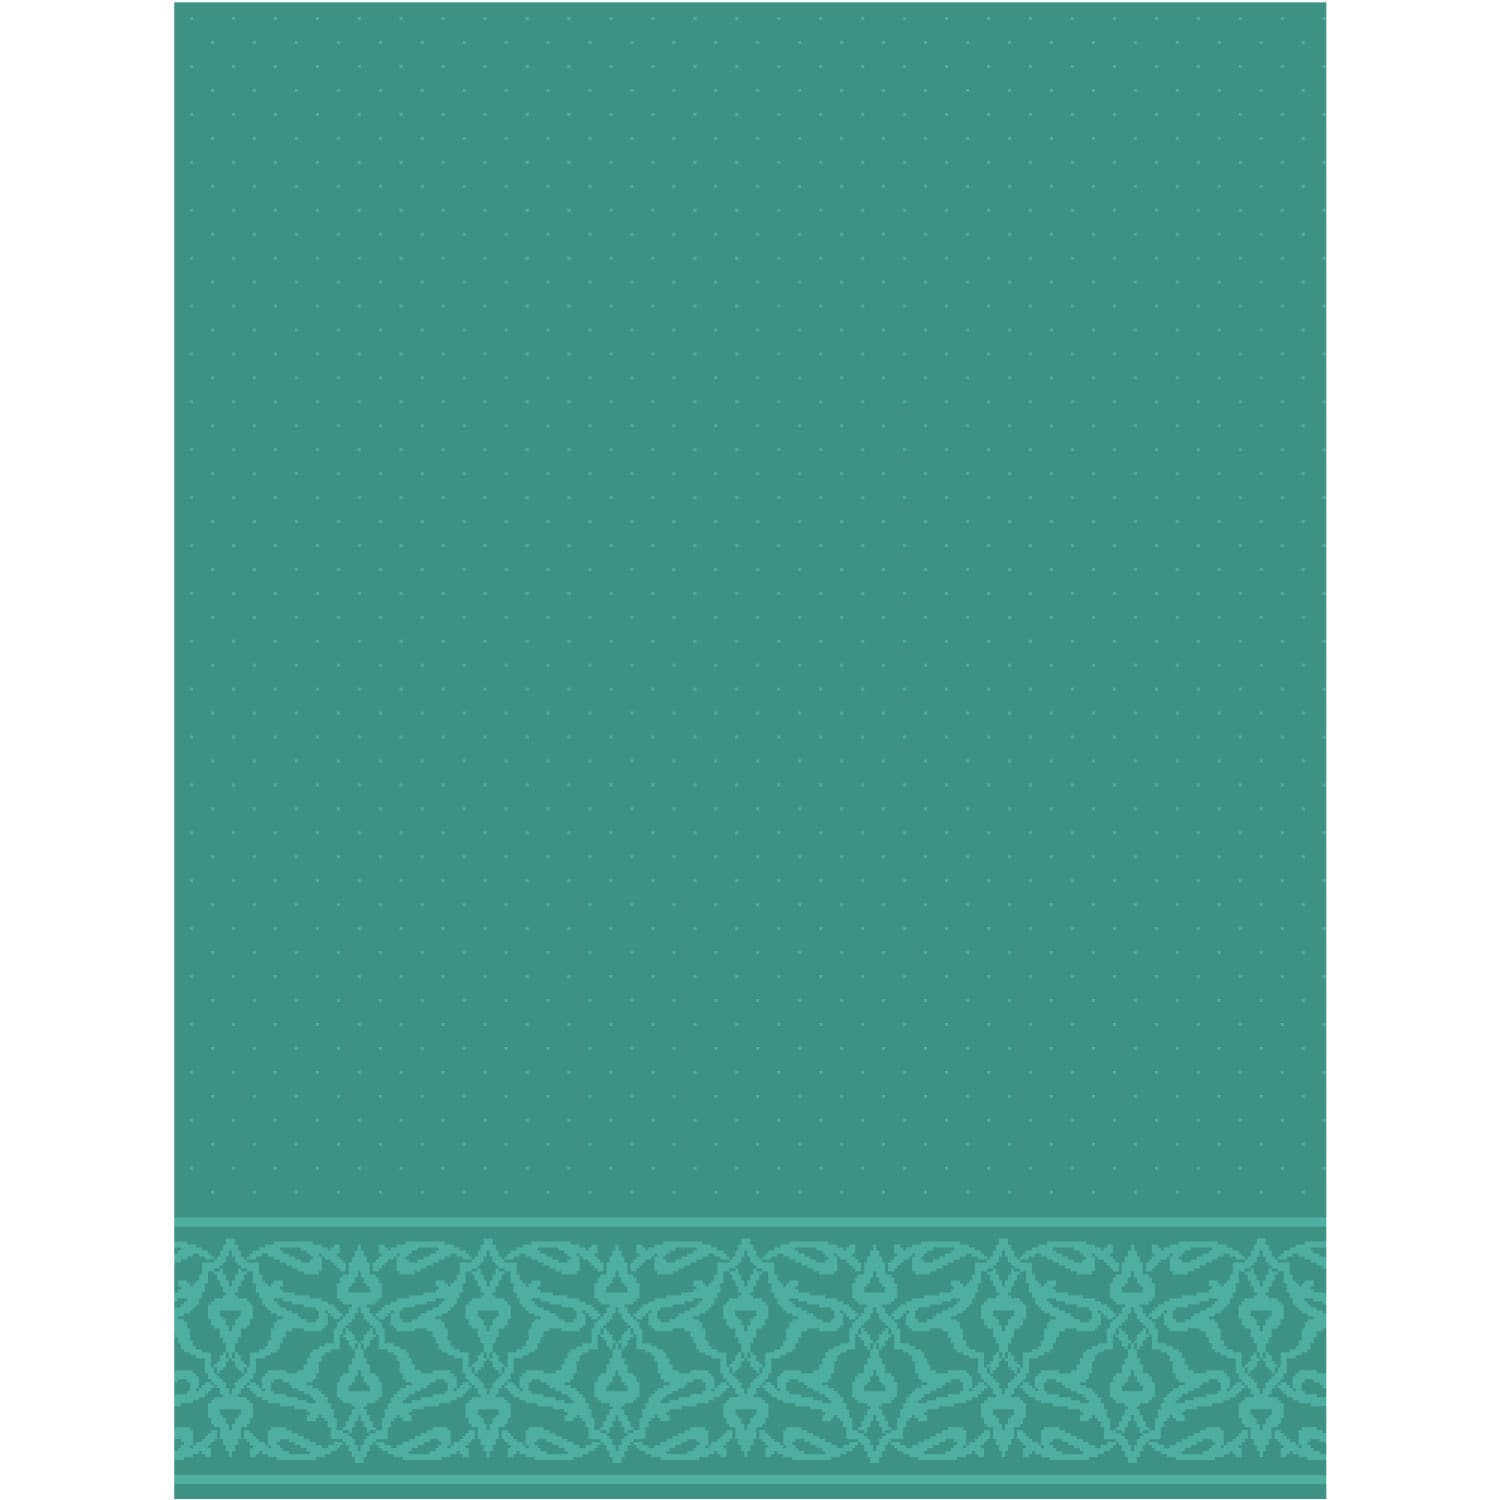 Tavus Halı - CS2028 Wool Mosque Carpet